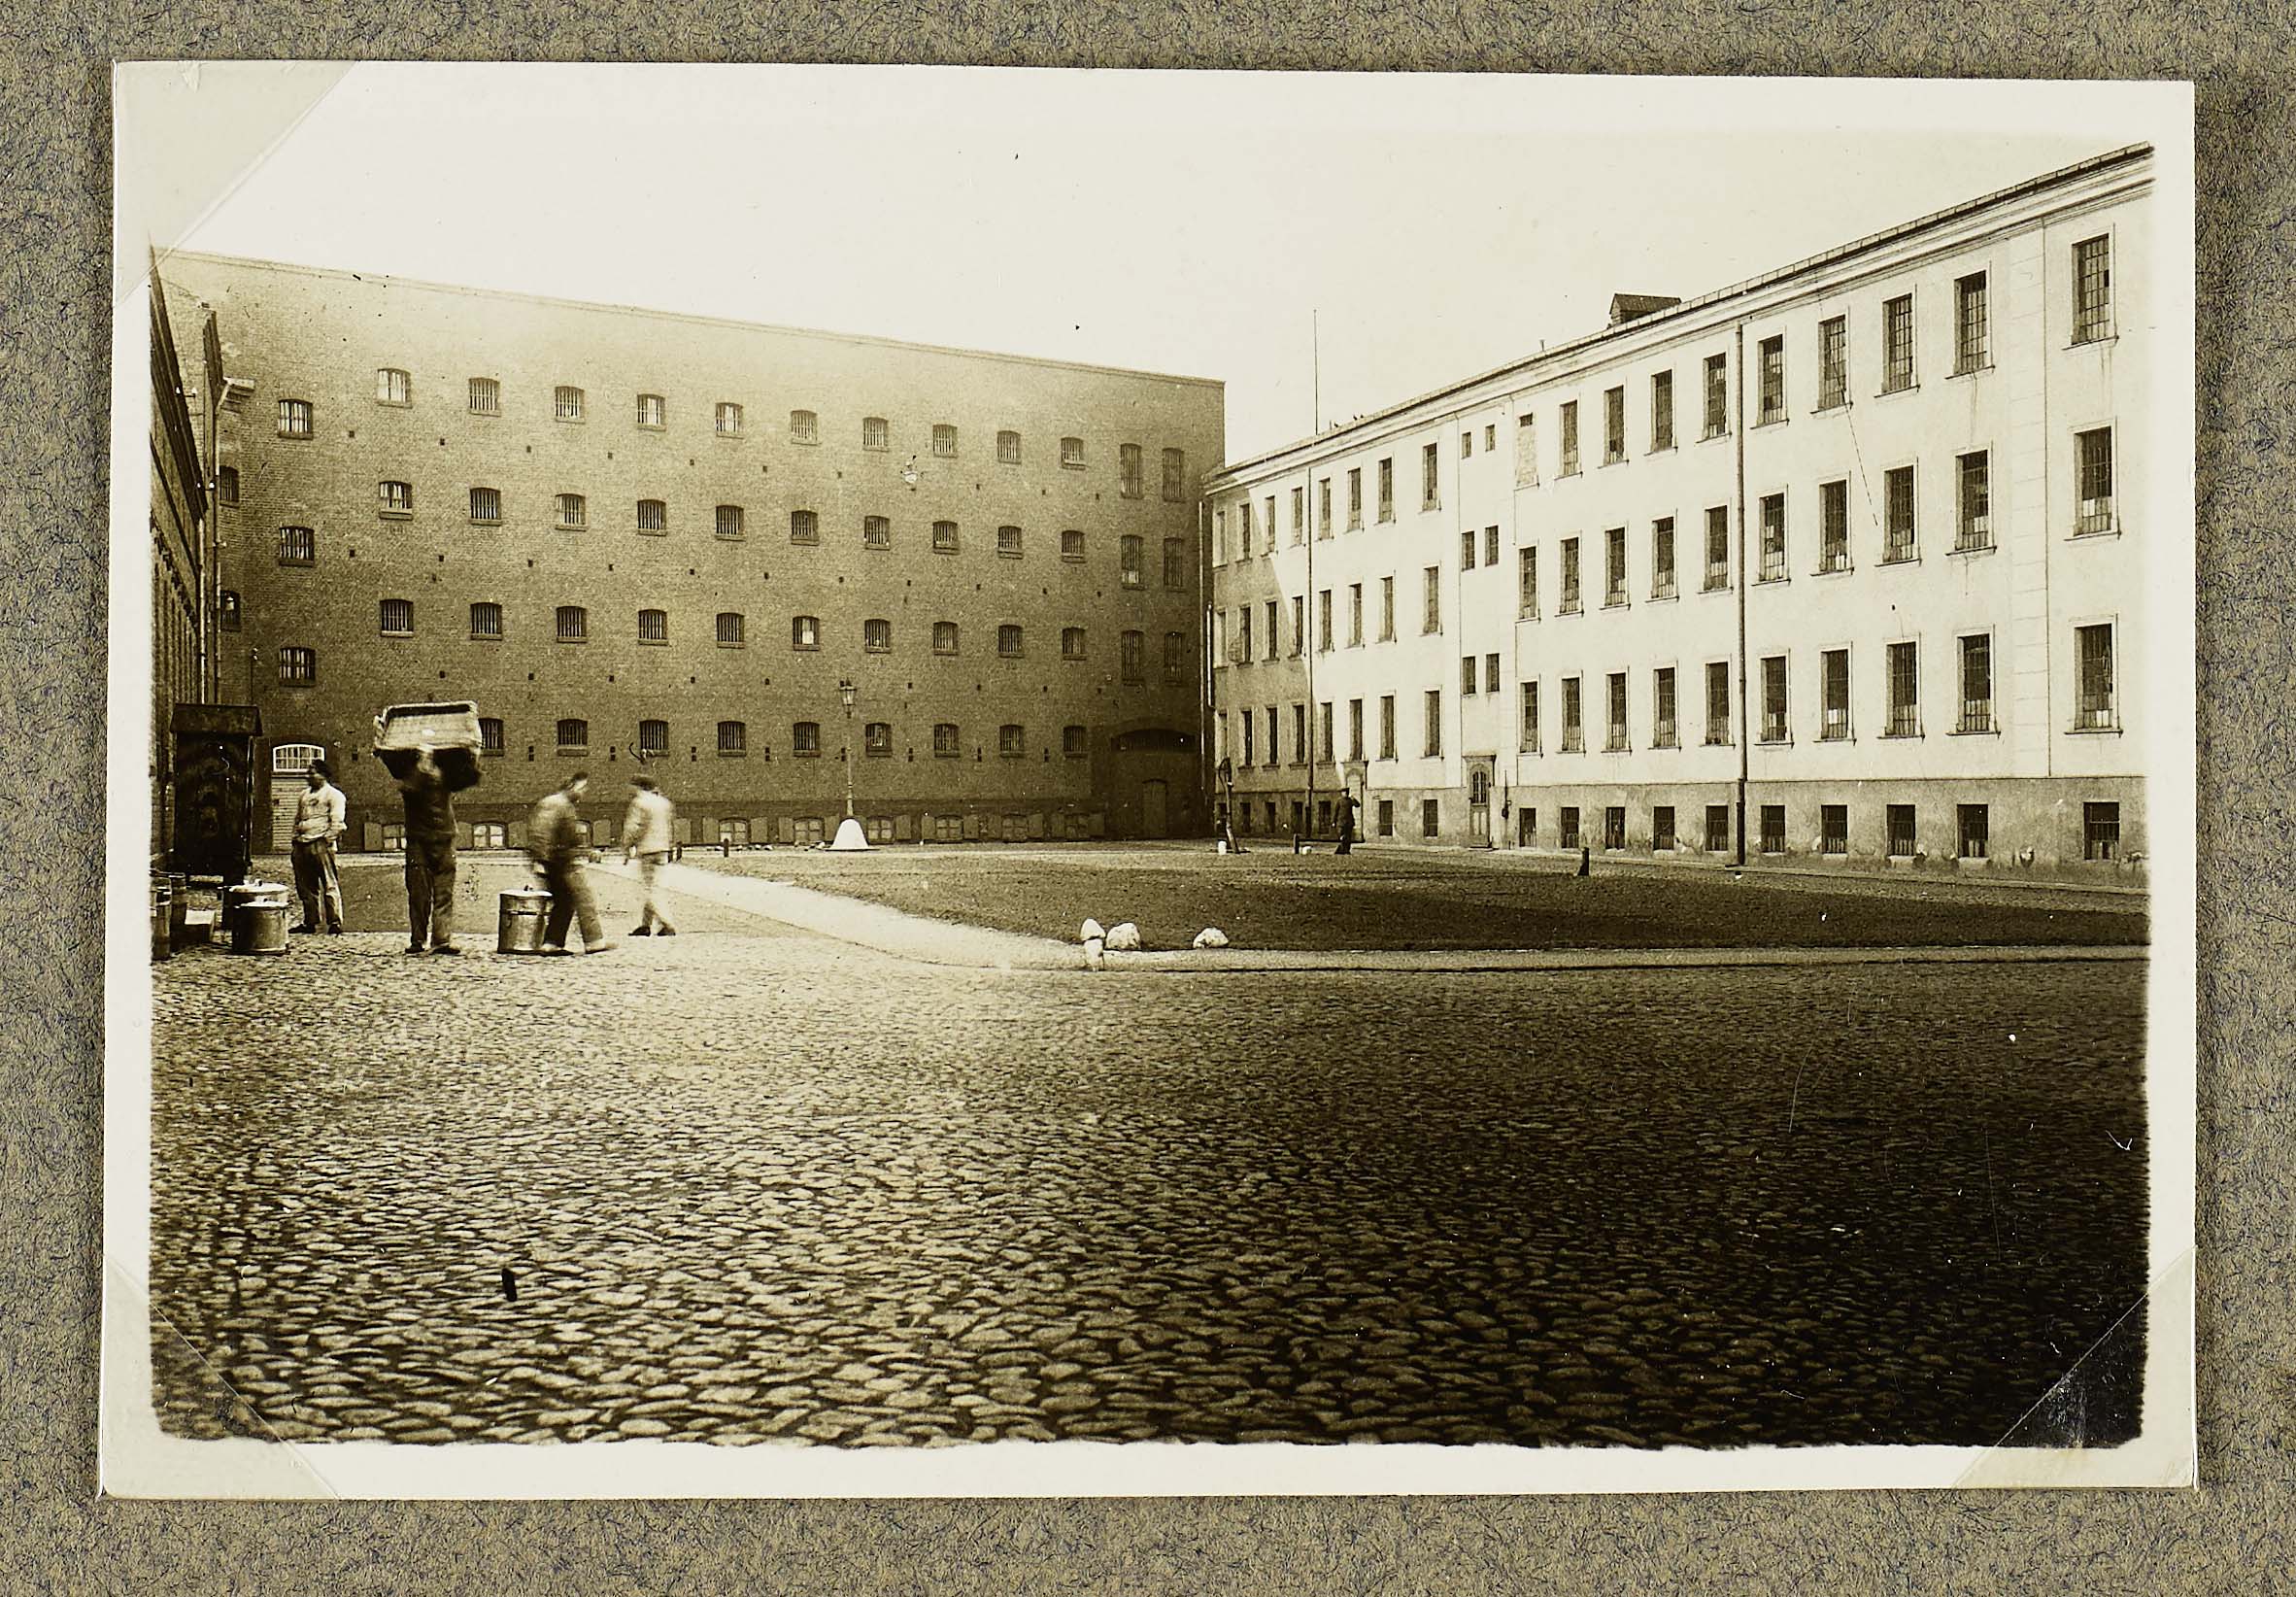 Der Gefängnishof. Er wird umrahmt von hohen Zellengebäuden und einem Wirtschaftsgebäude auf der linken Seite. Links im Vordergrund entladen Häftlinge etwas. Das Foto ist schwarz-weiß.